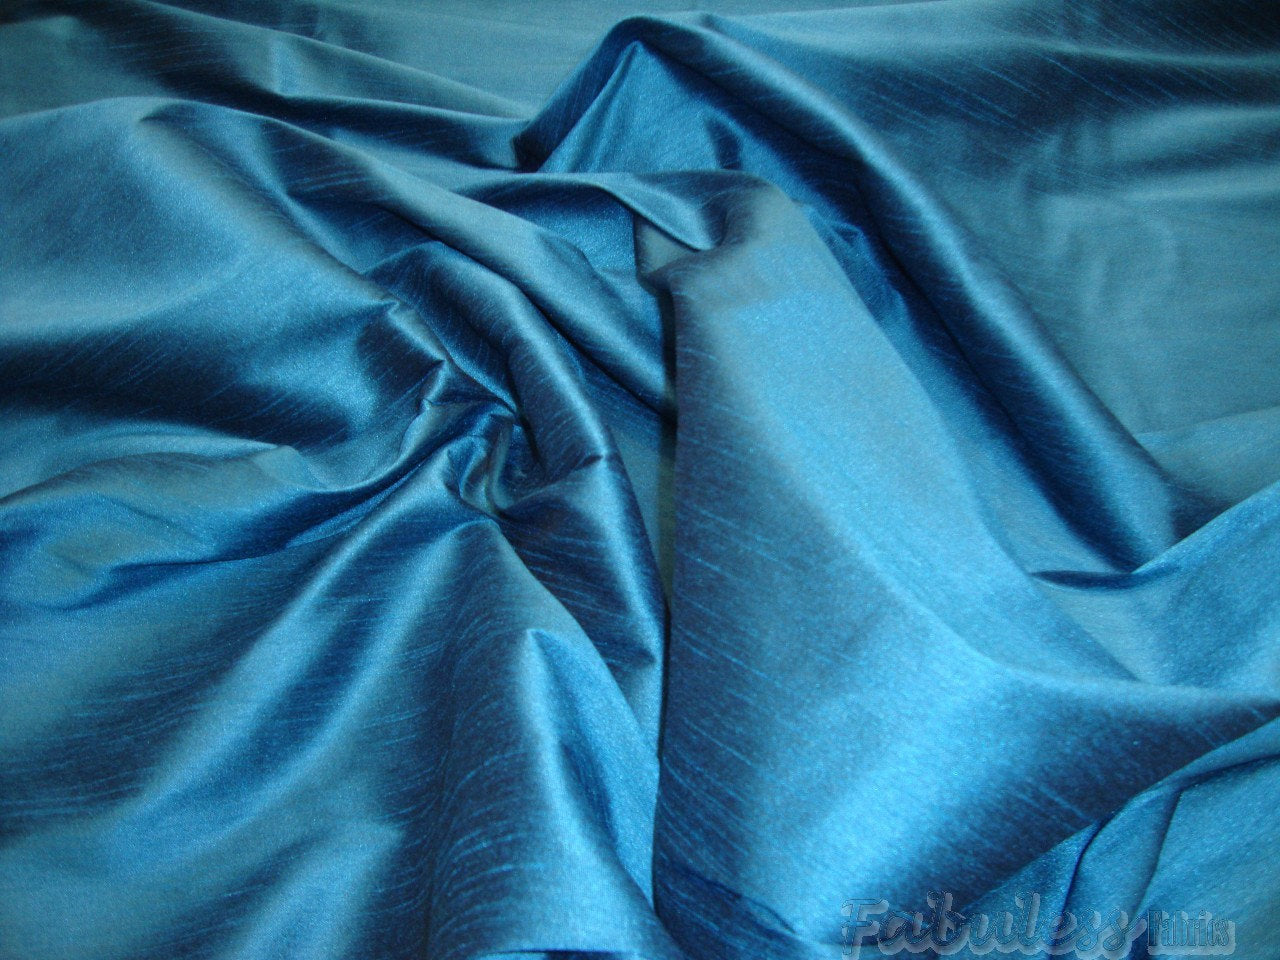 Horizon Blue Shantung Dupioni Faux Silk 54" Wide || Fabric by the Yard